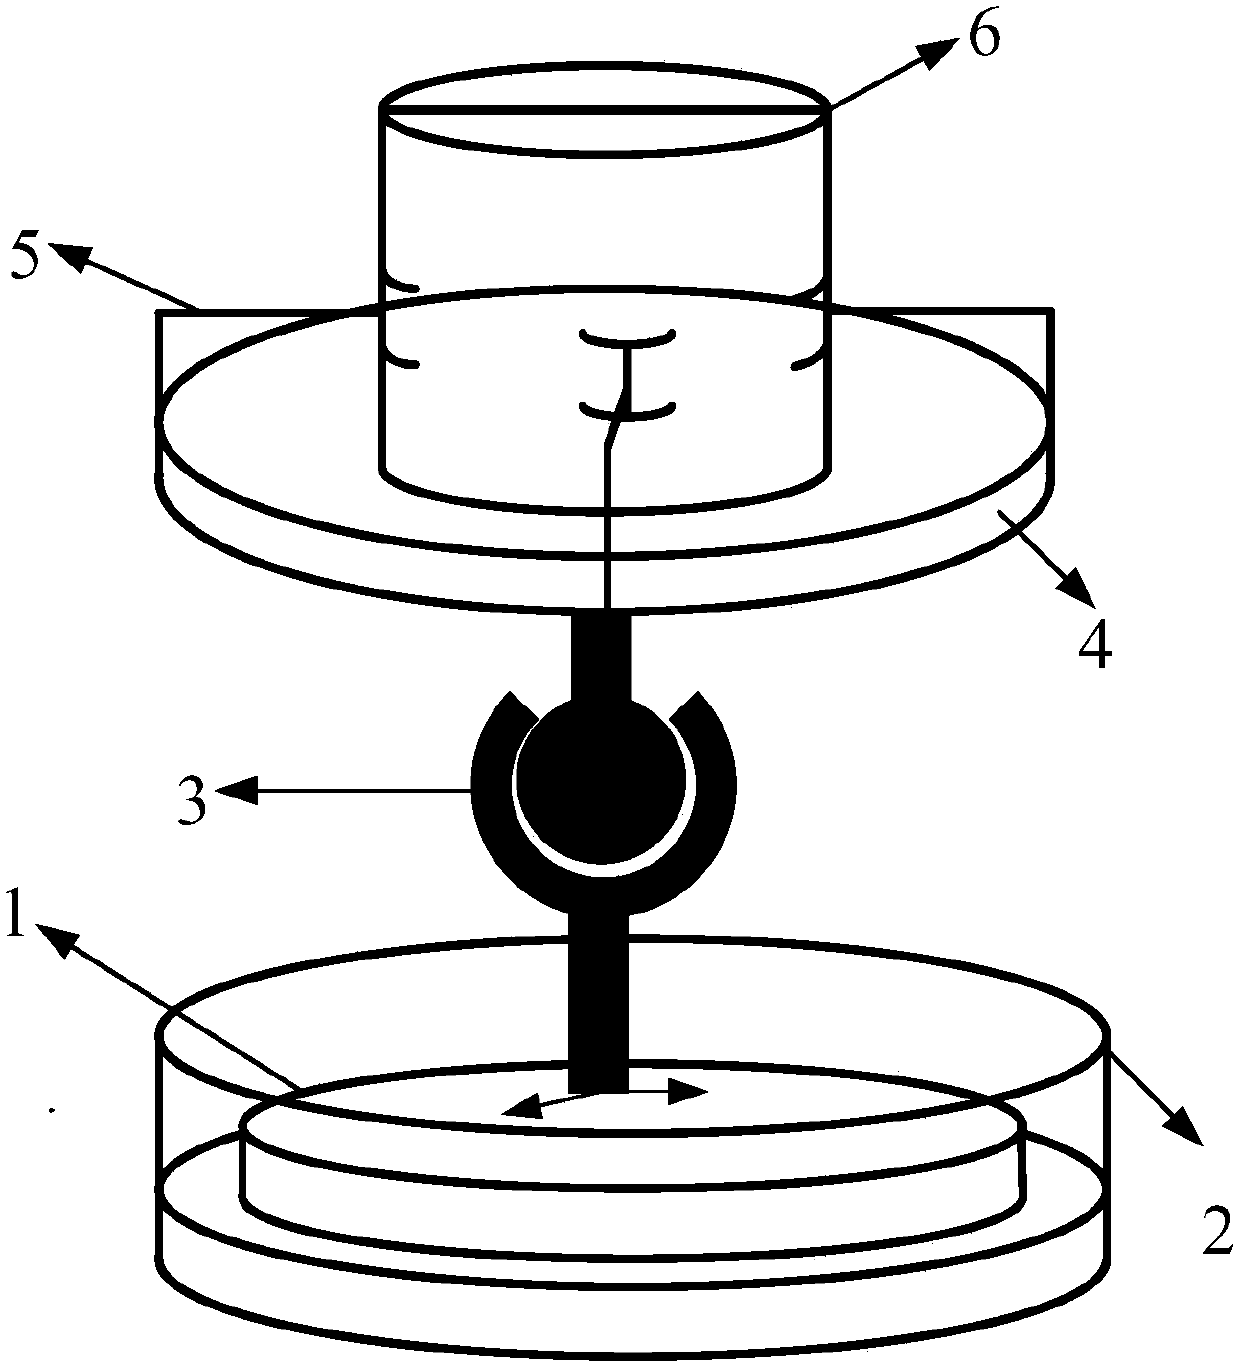 A general experimental platform structure for magnetic fluid hybrid levitation